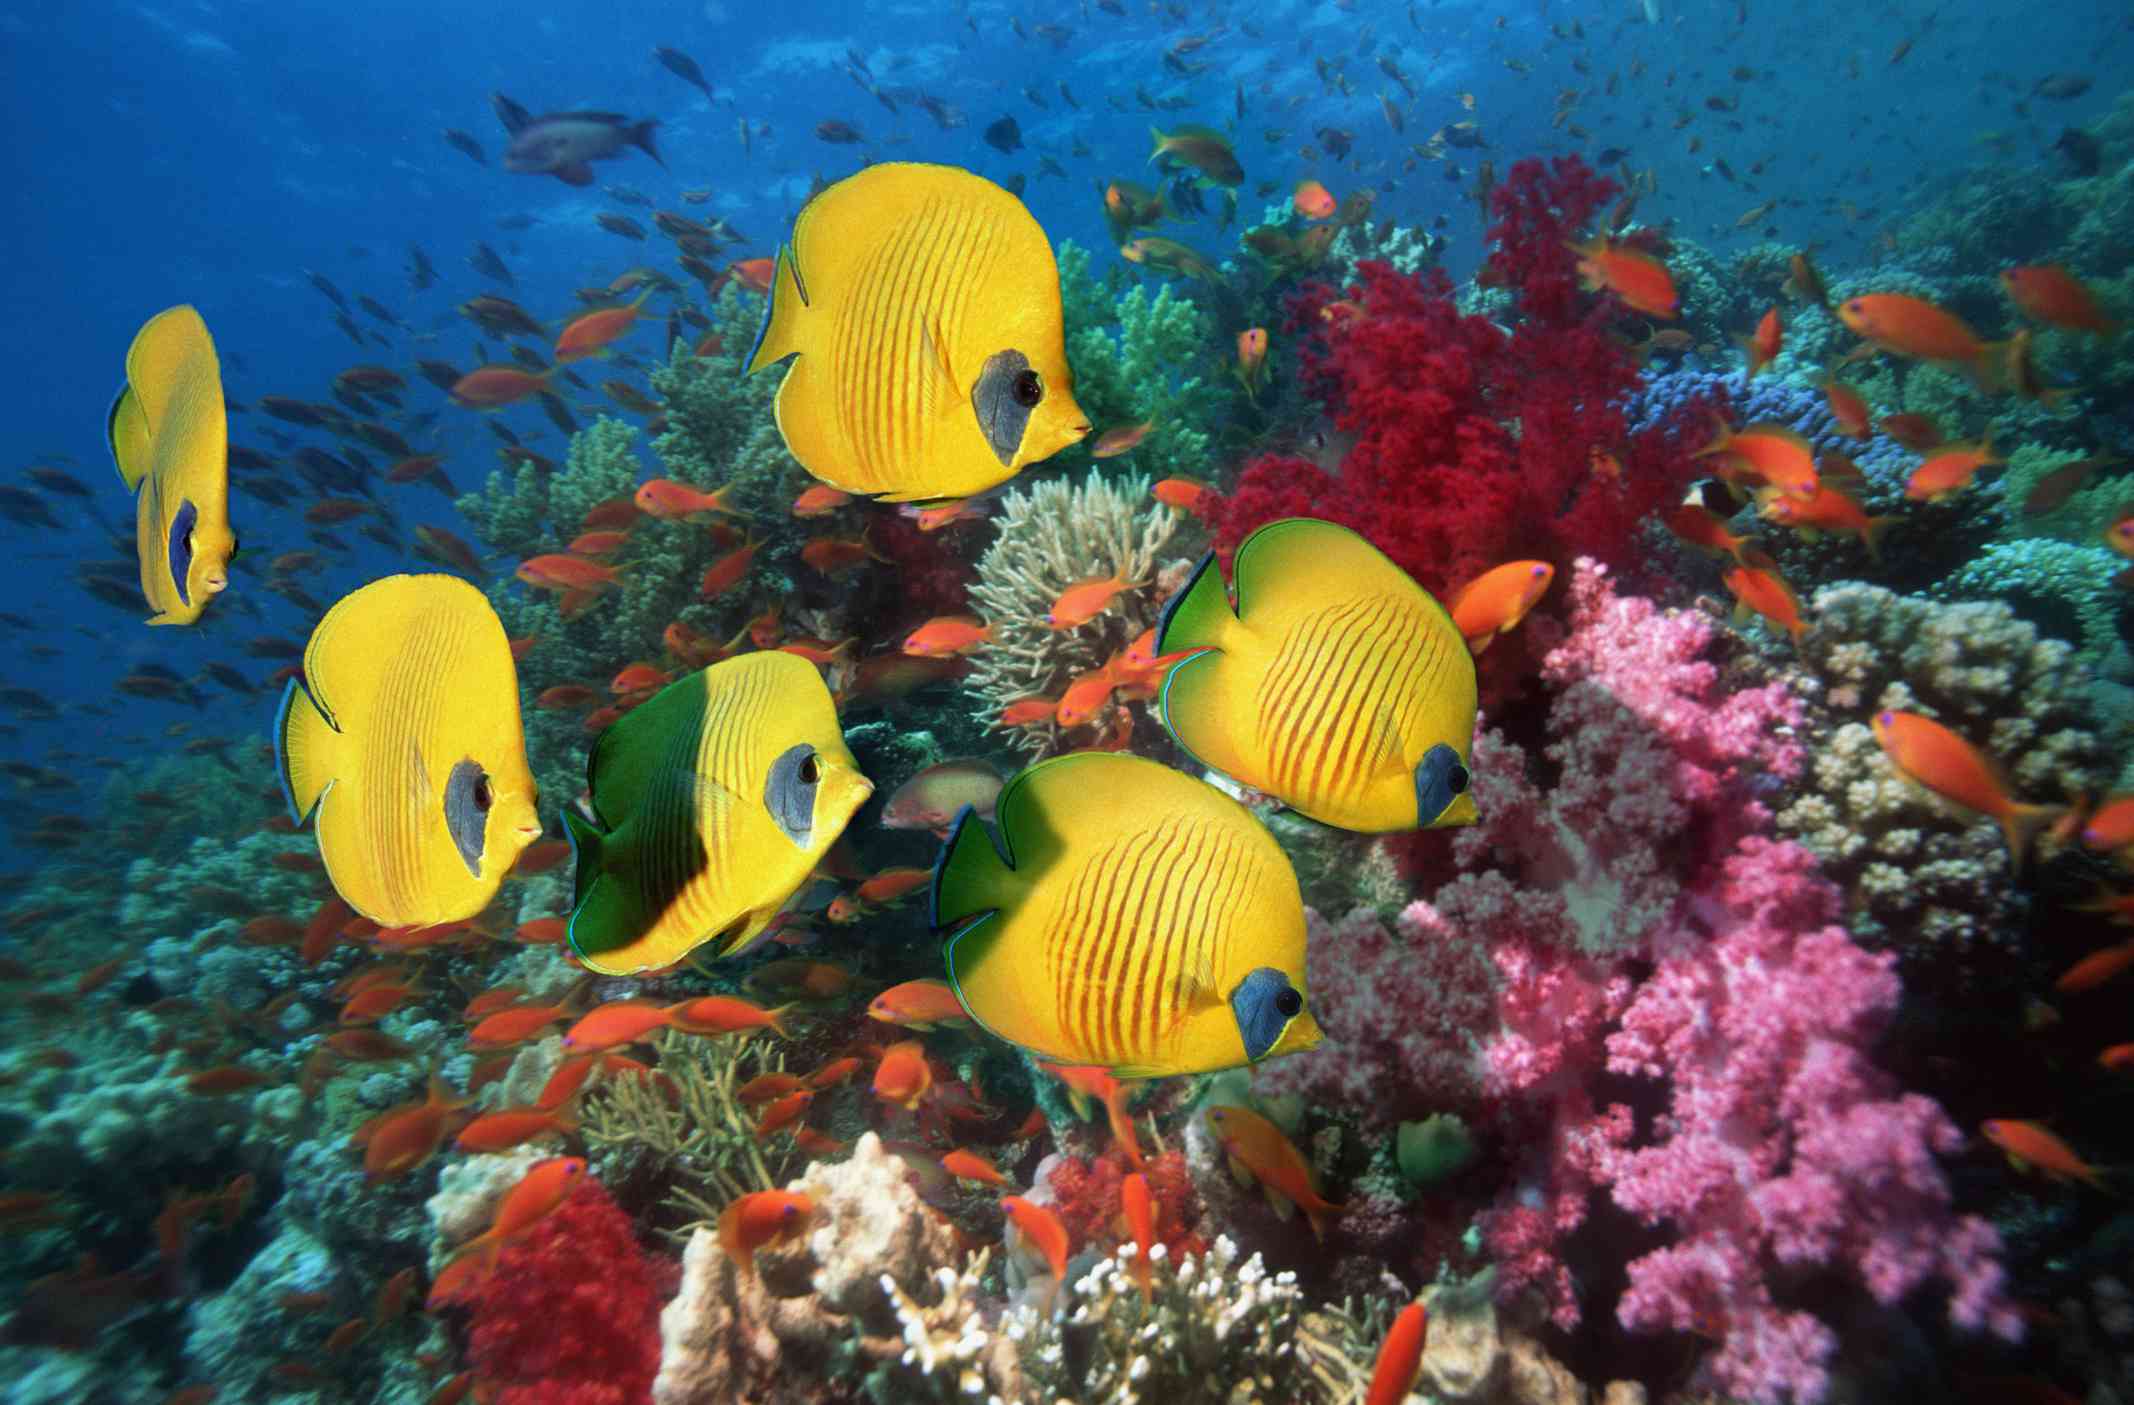 六条金色的蝴蝶鱼在布满粉红色、绿色、红色和蓝色珊瑚的珊瑚礁上